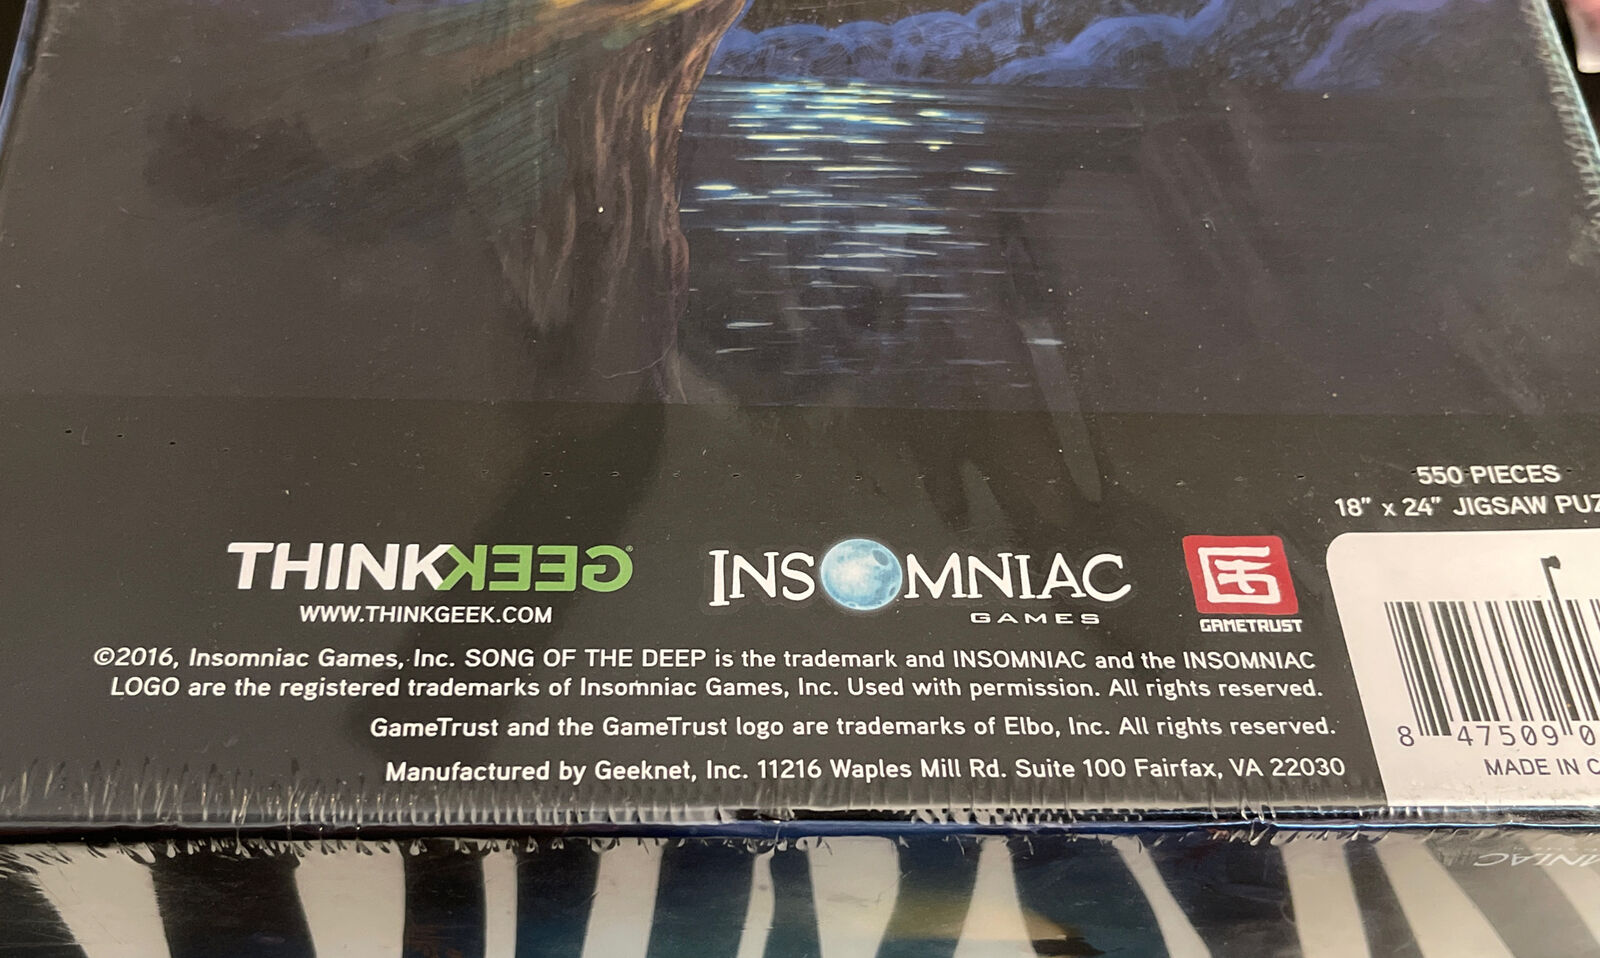 NIB NEW INSOMNIAC Song of Deep Collector's Limited Edition Jigsaw 550 Puzzle  Thinkgeek/Insomniac Games - фотография #5